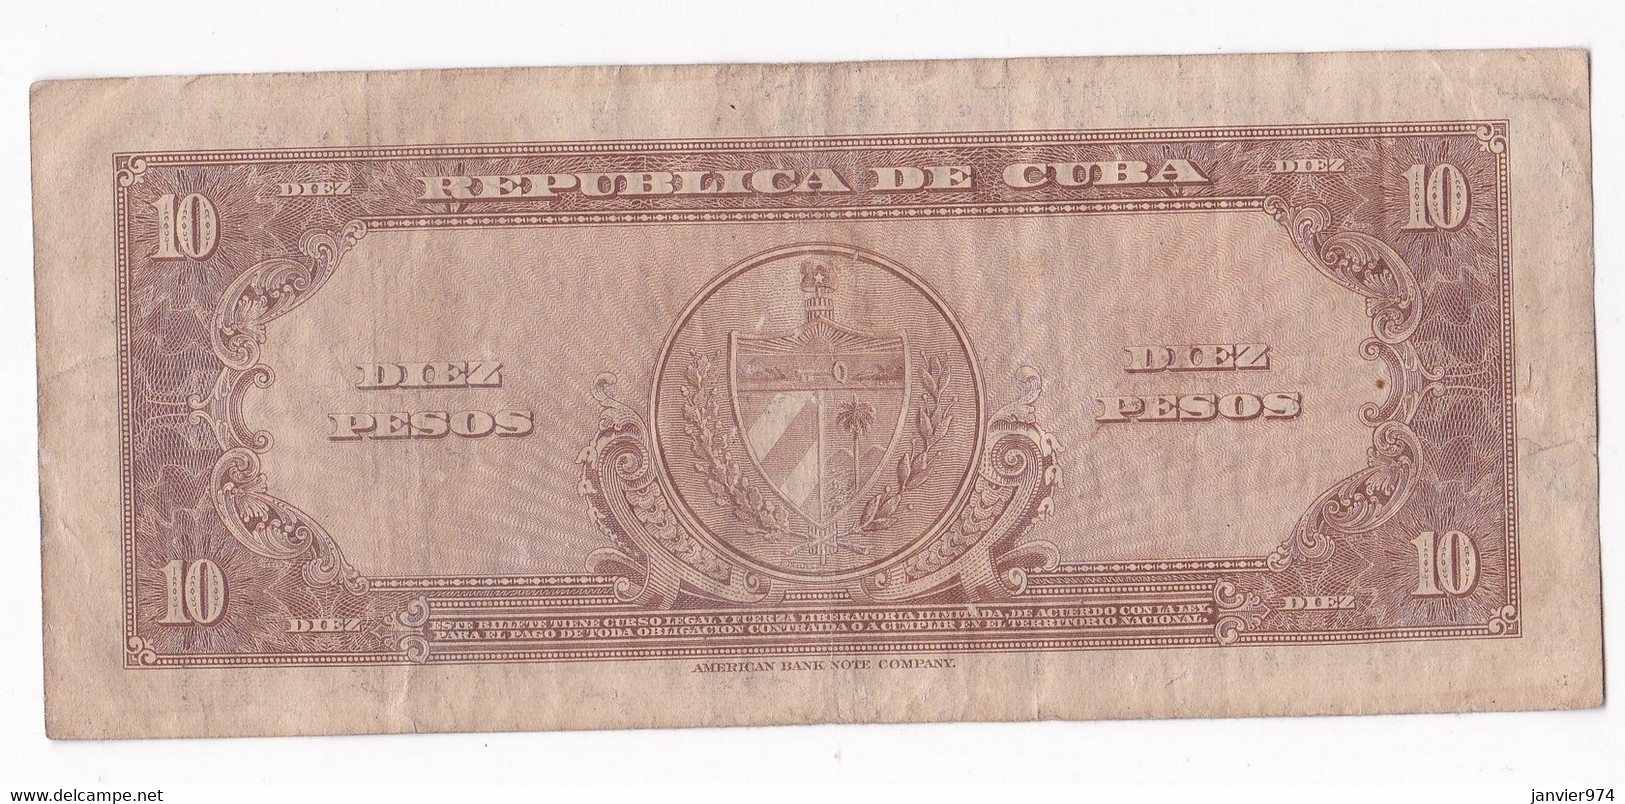 Cuba 10 Pesos Carlos Manuel De Cespedes 1960, N° A678514A , Billet Ayant Circulé - Cuba